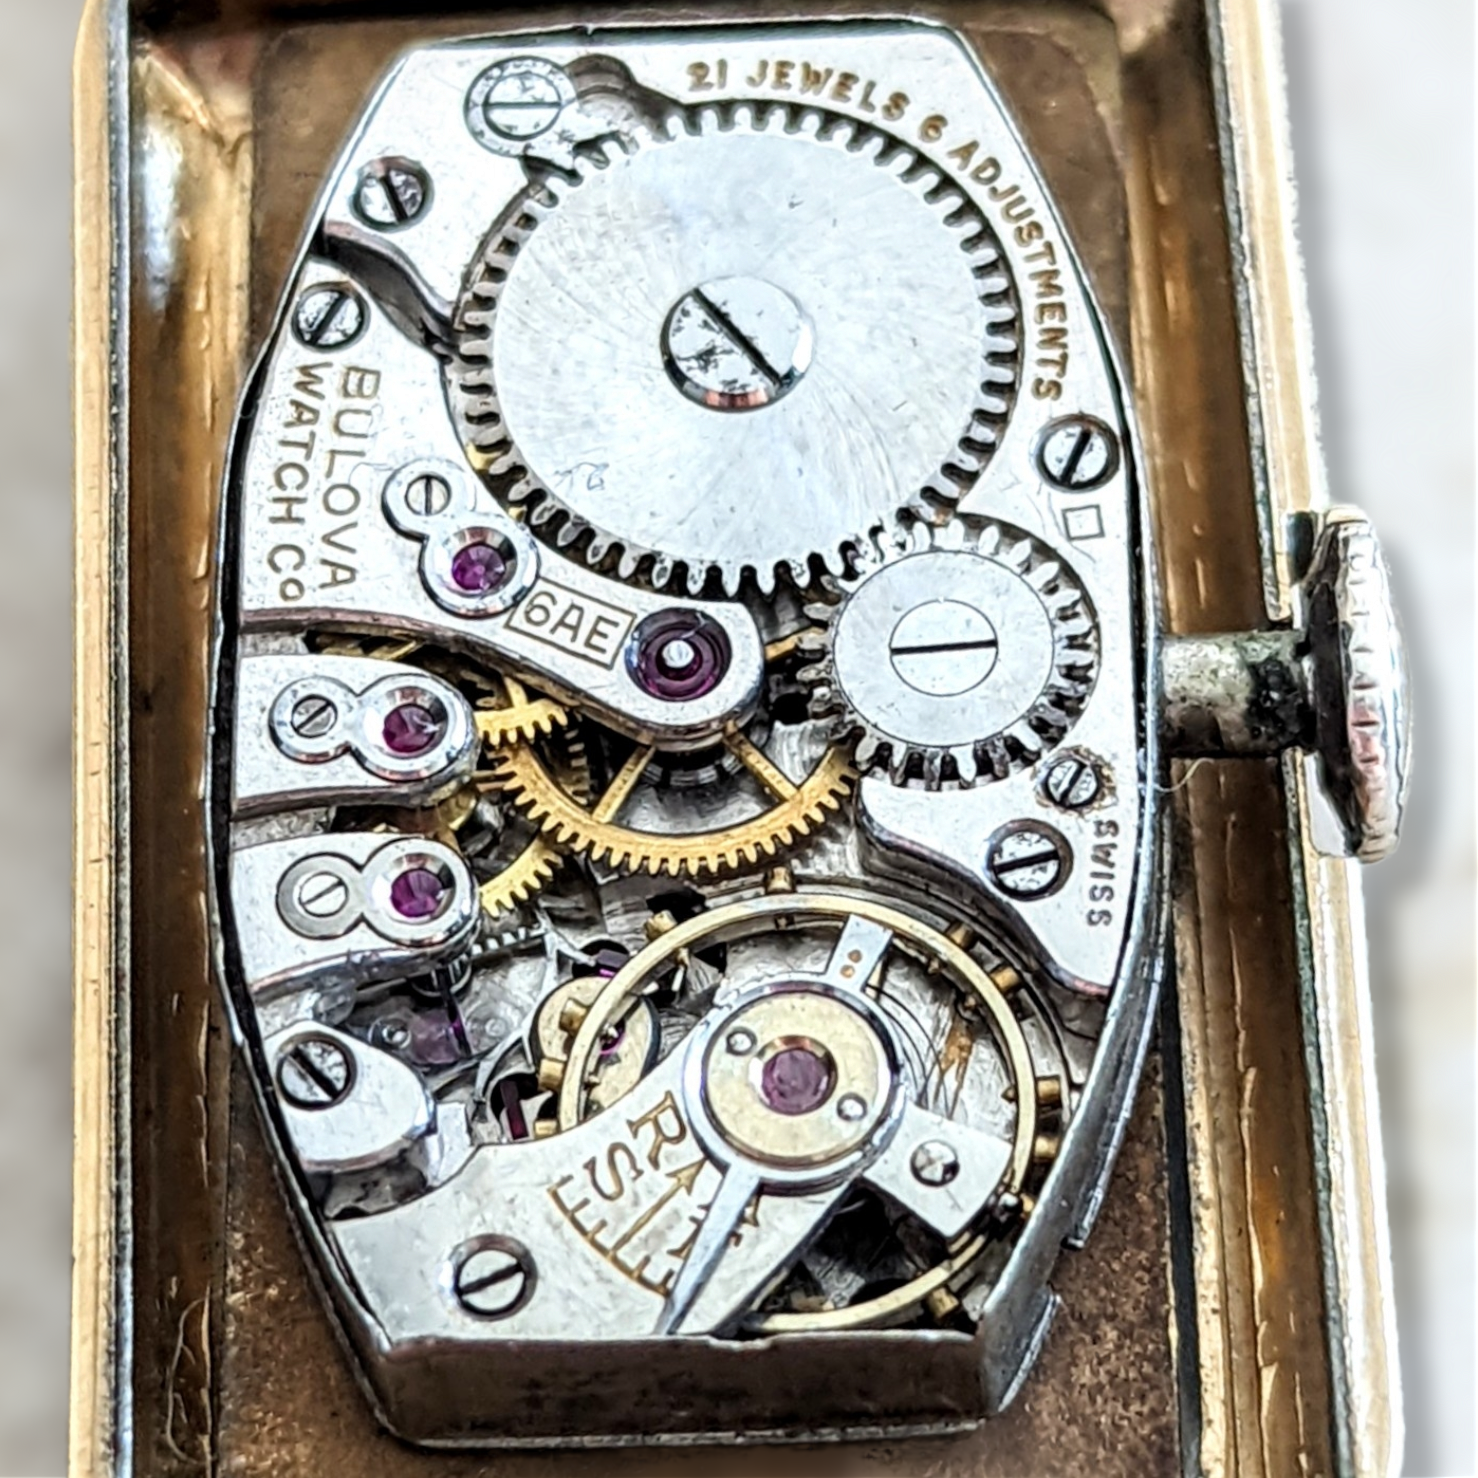 1936 BULOBA BRETON Watch 21 Jewels Cal. 8AE Swiss Made